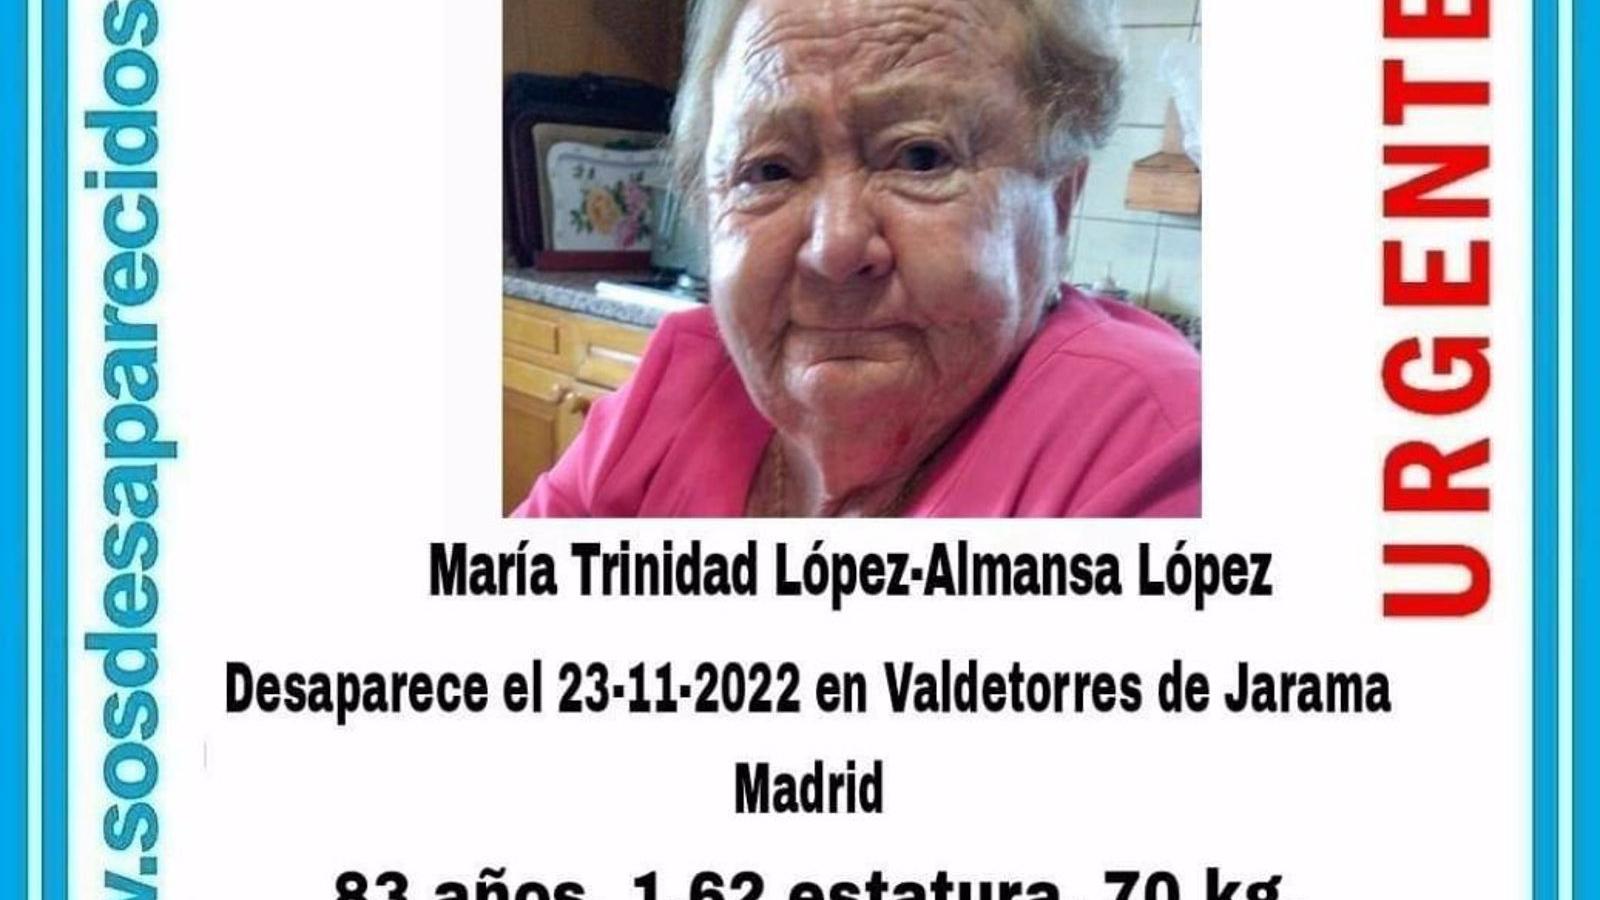 La Guardia Civil busca a una mujer de 83 años vecina de Valdetorres de Jarama desaparecida el martes